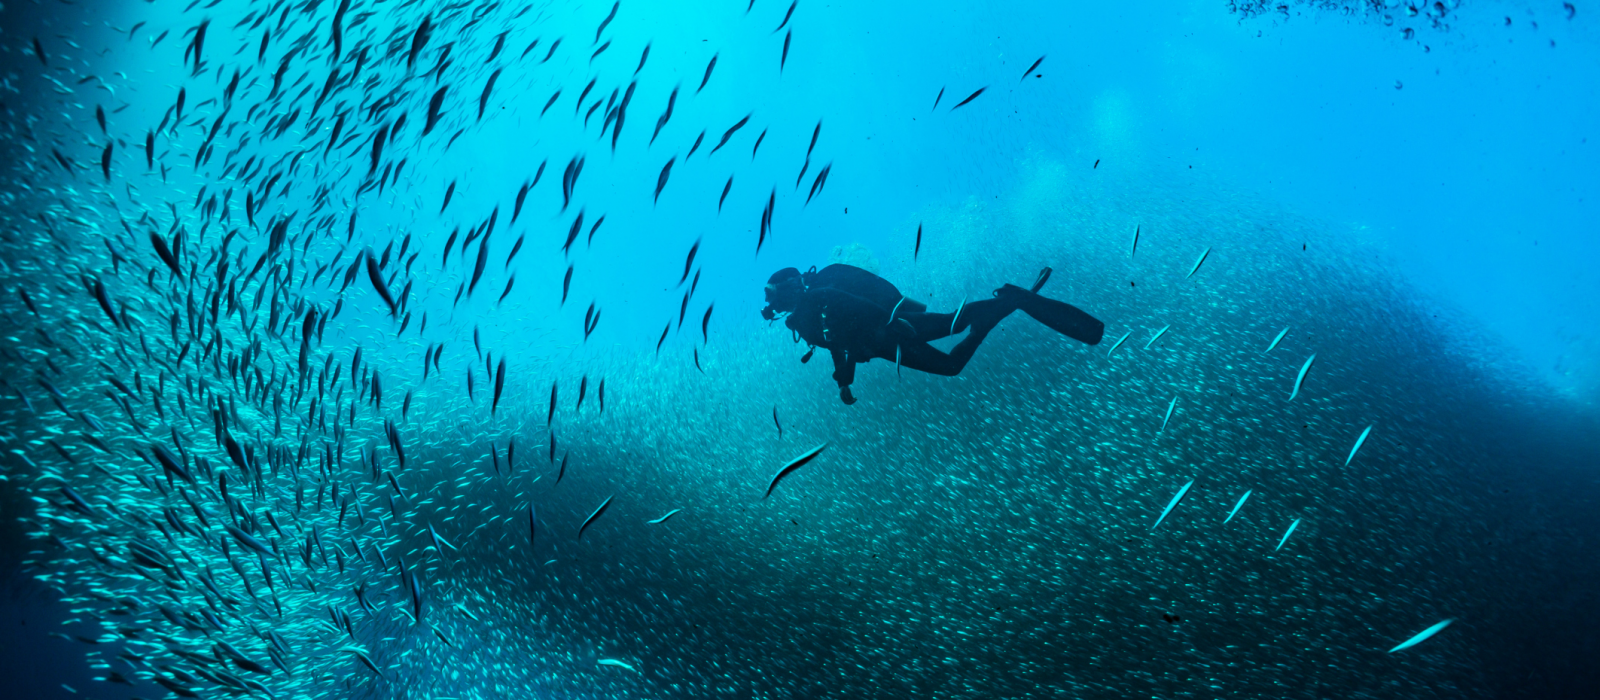 Les plus beaux sites de plongée de la Côte d'Azur